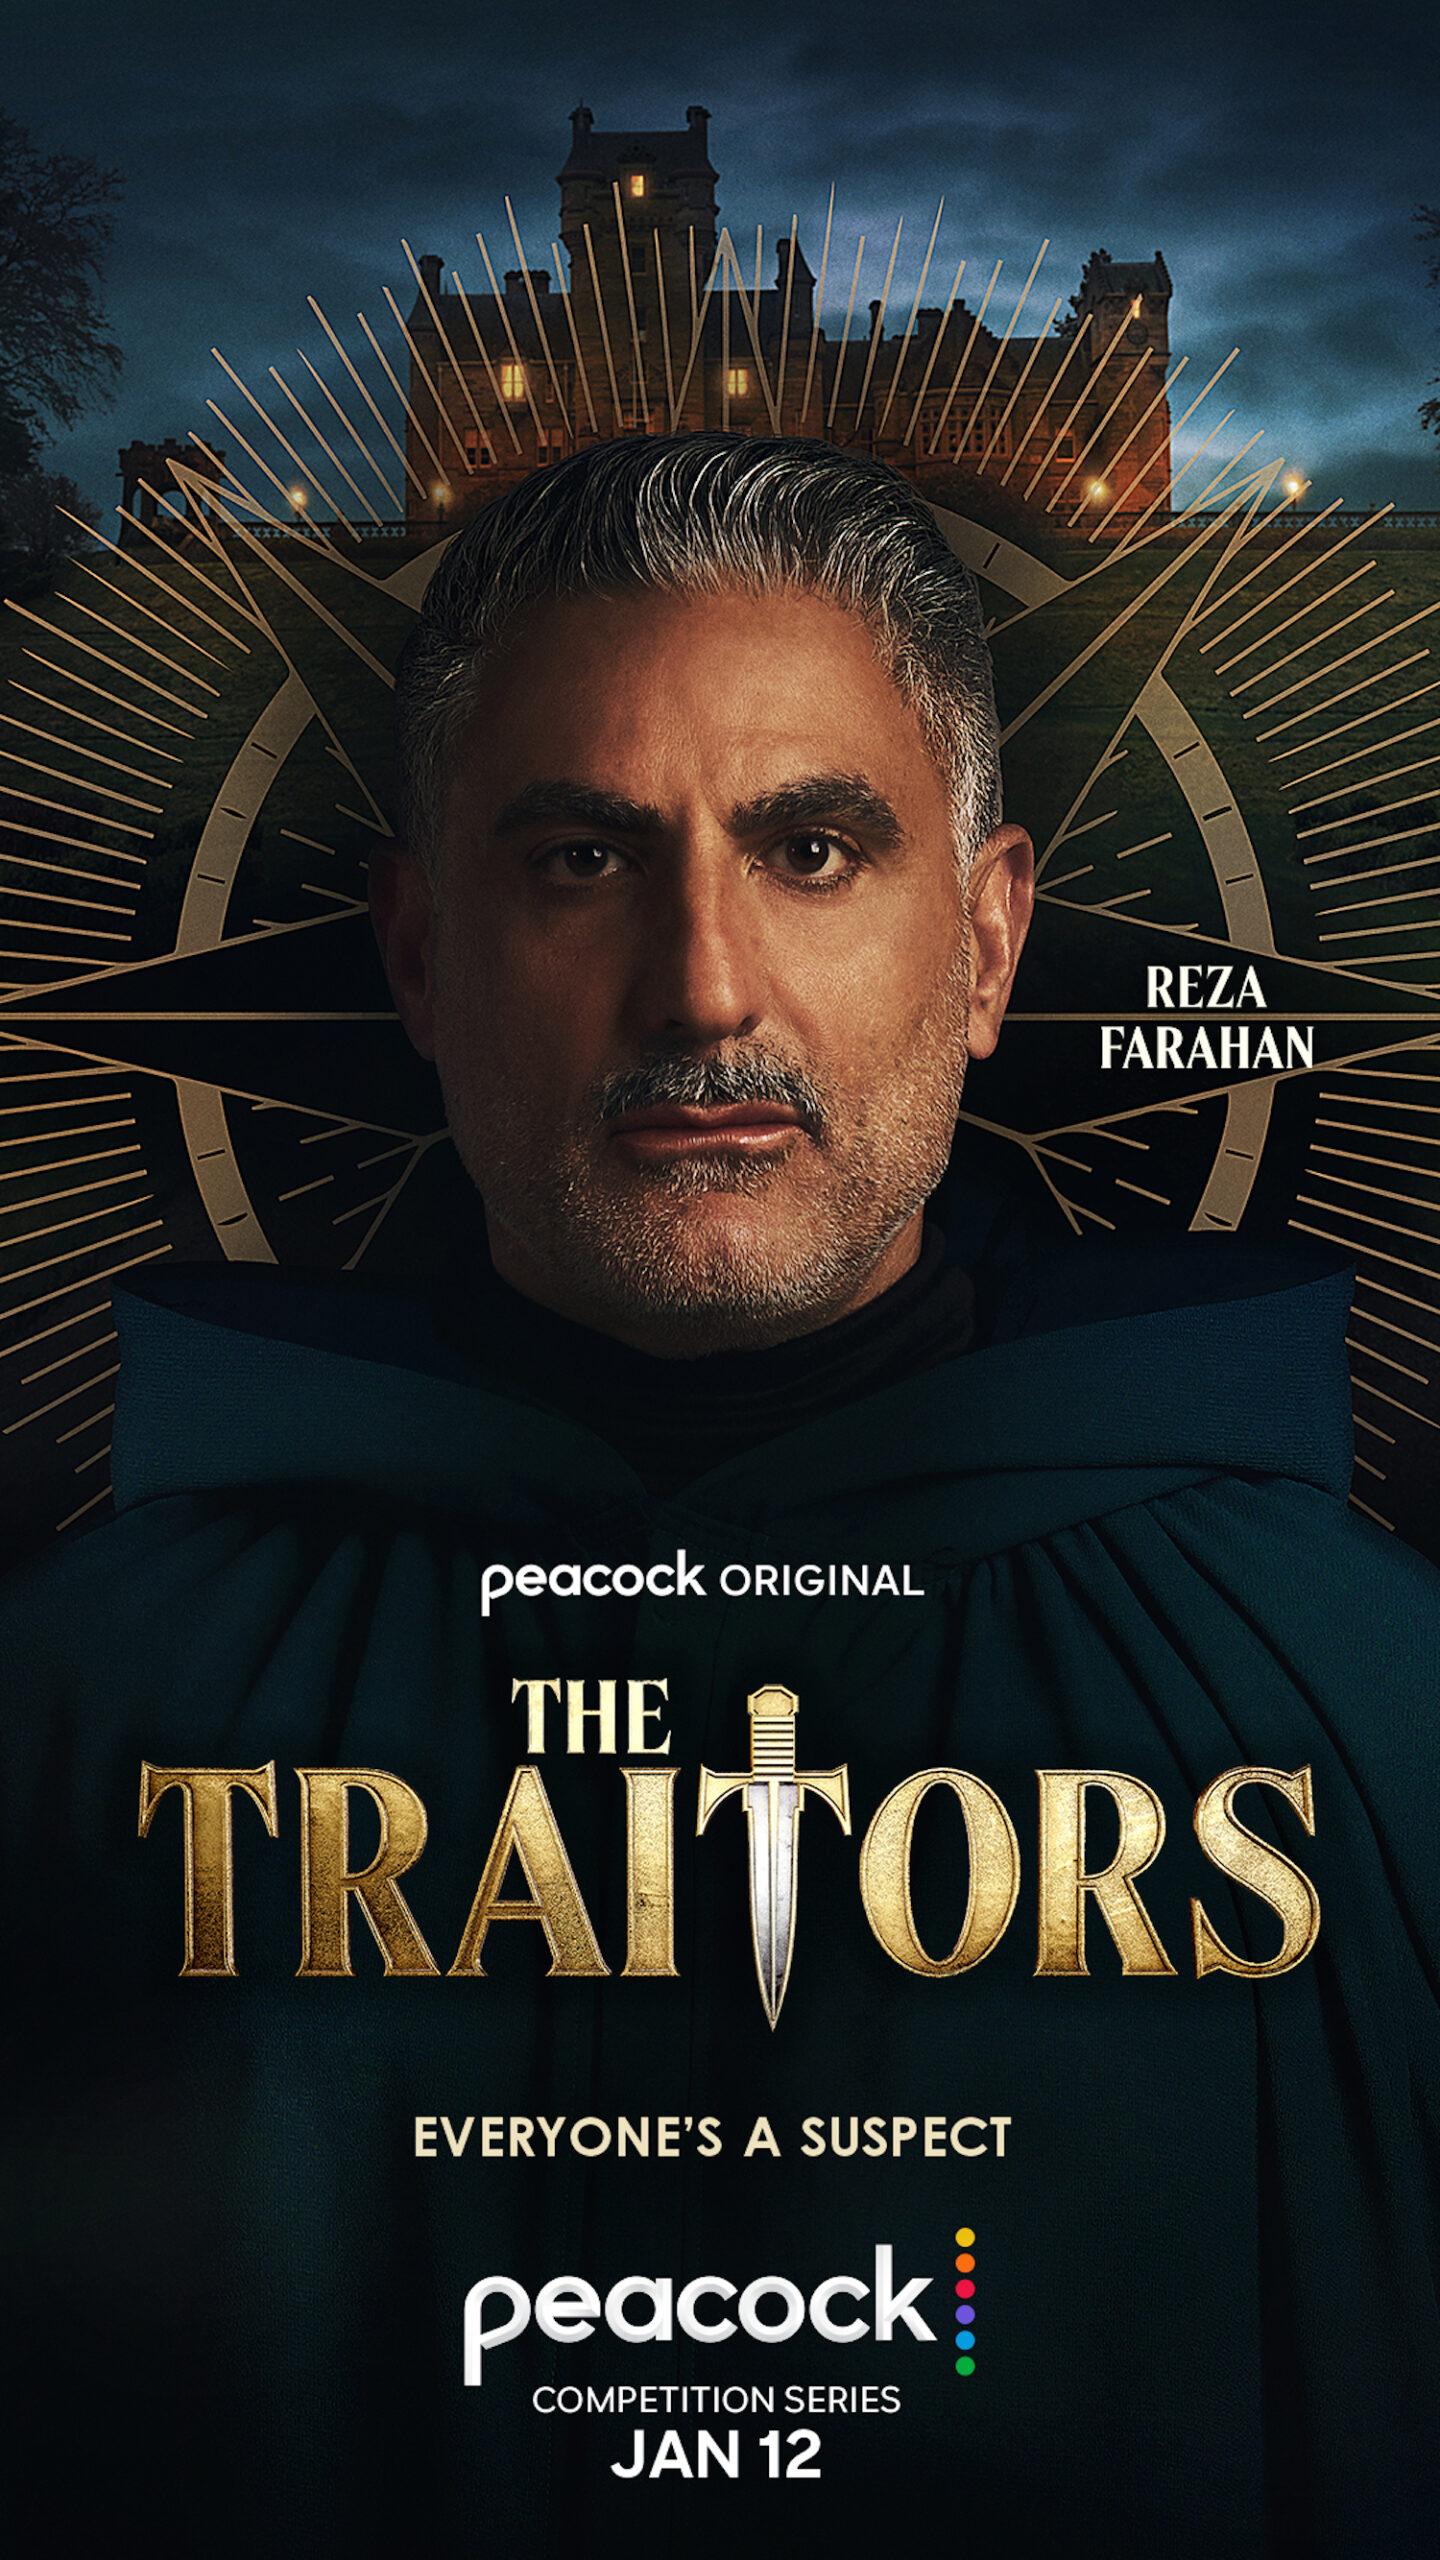 Reza Farahan for 'The Traitors'